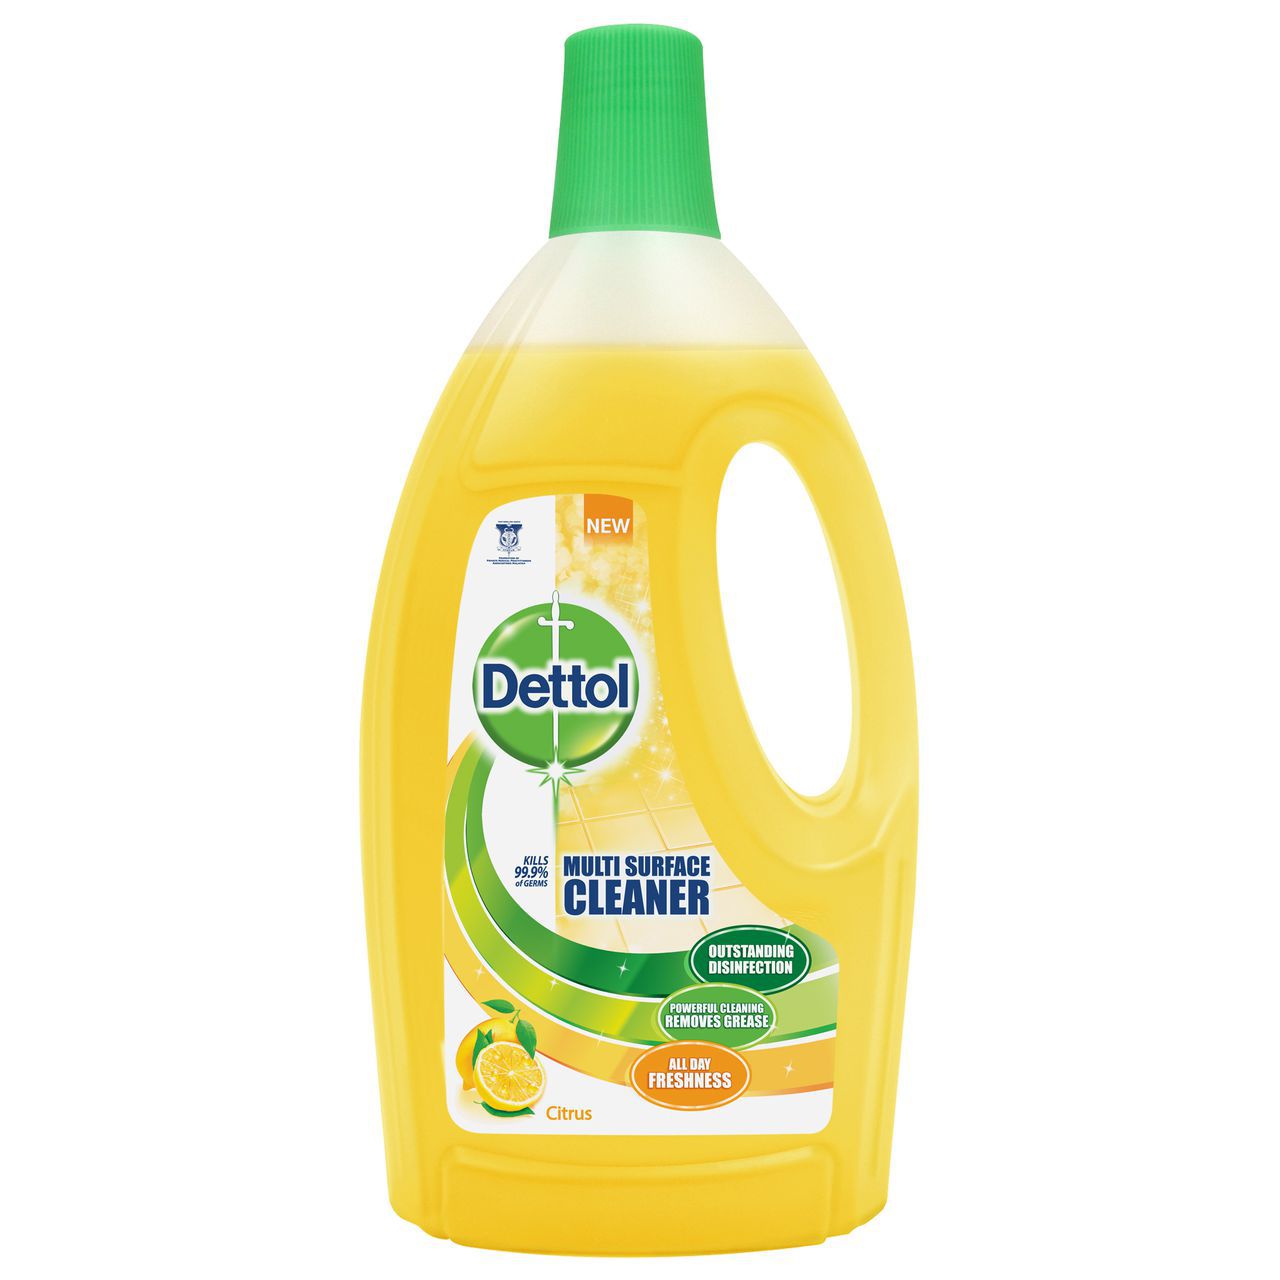 [ส่งฟรี]Dettol Multi Surface Cleaner Citrus 1.5L เดทตอล น้ำยาทำความสะอาดพื้นผิว กลิ่นมะนาว สีเหลือง 1.5ลิตร Free Shipping